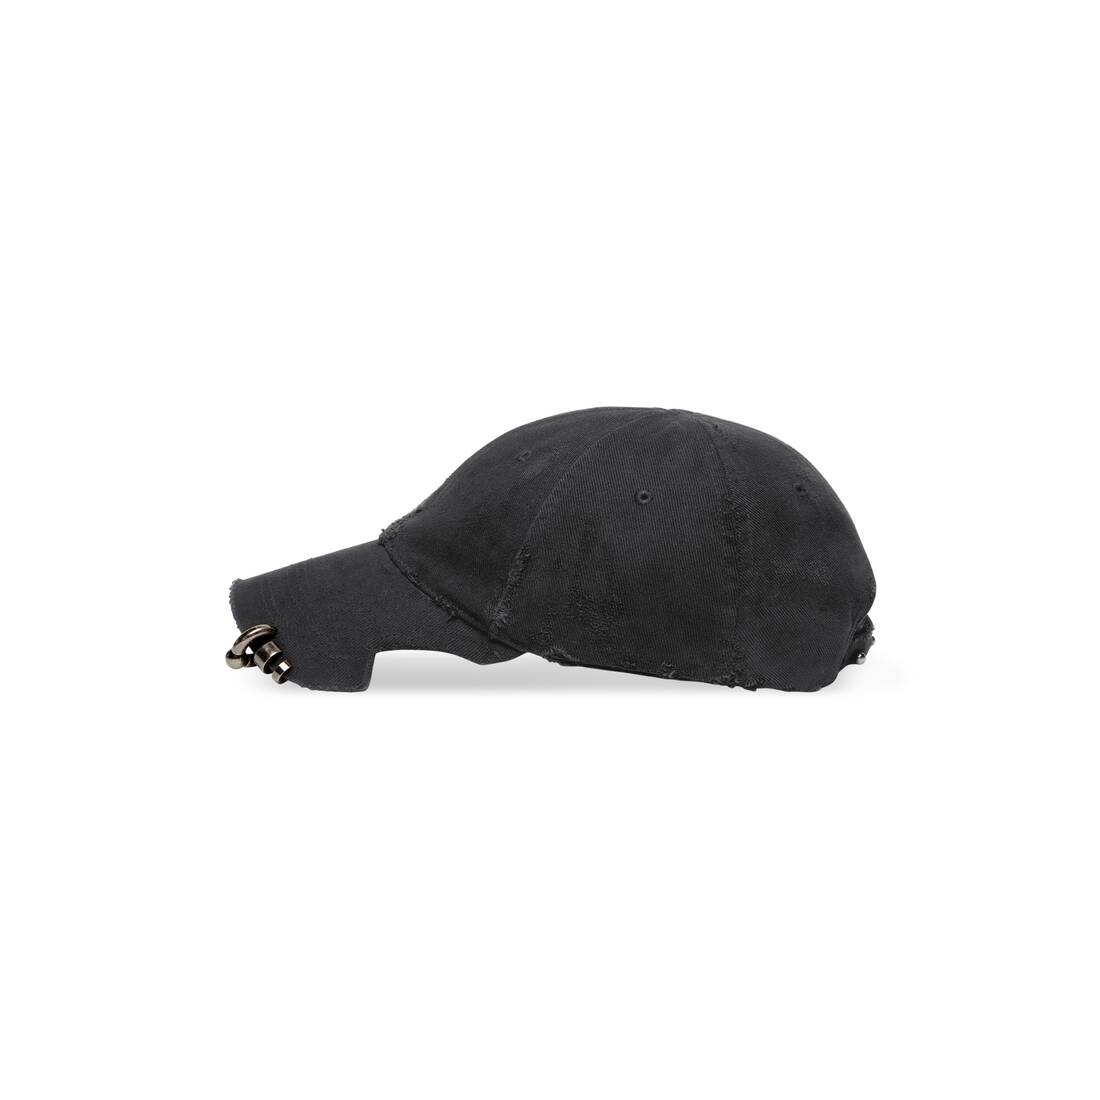 Heavy Piercing Cap in Black Faded - 4